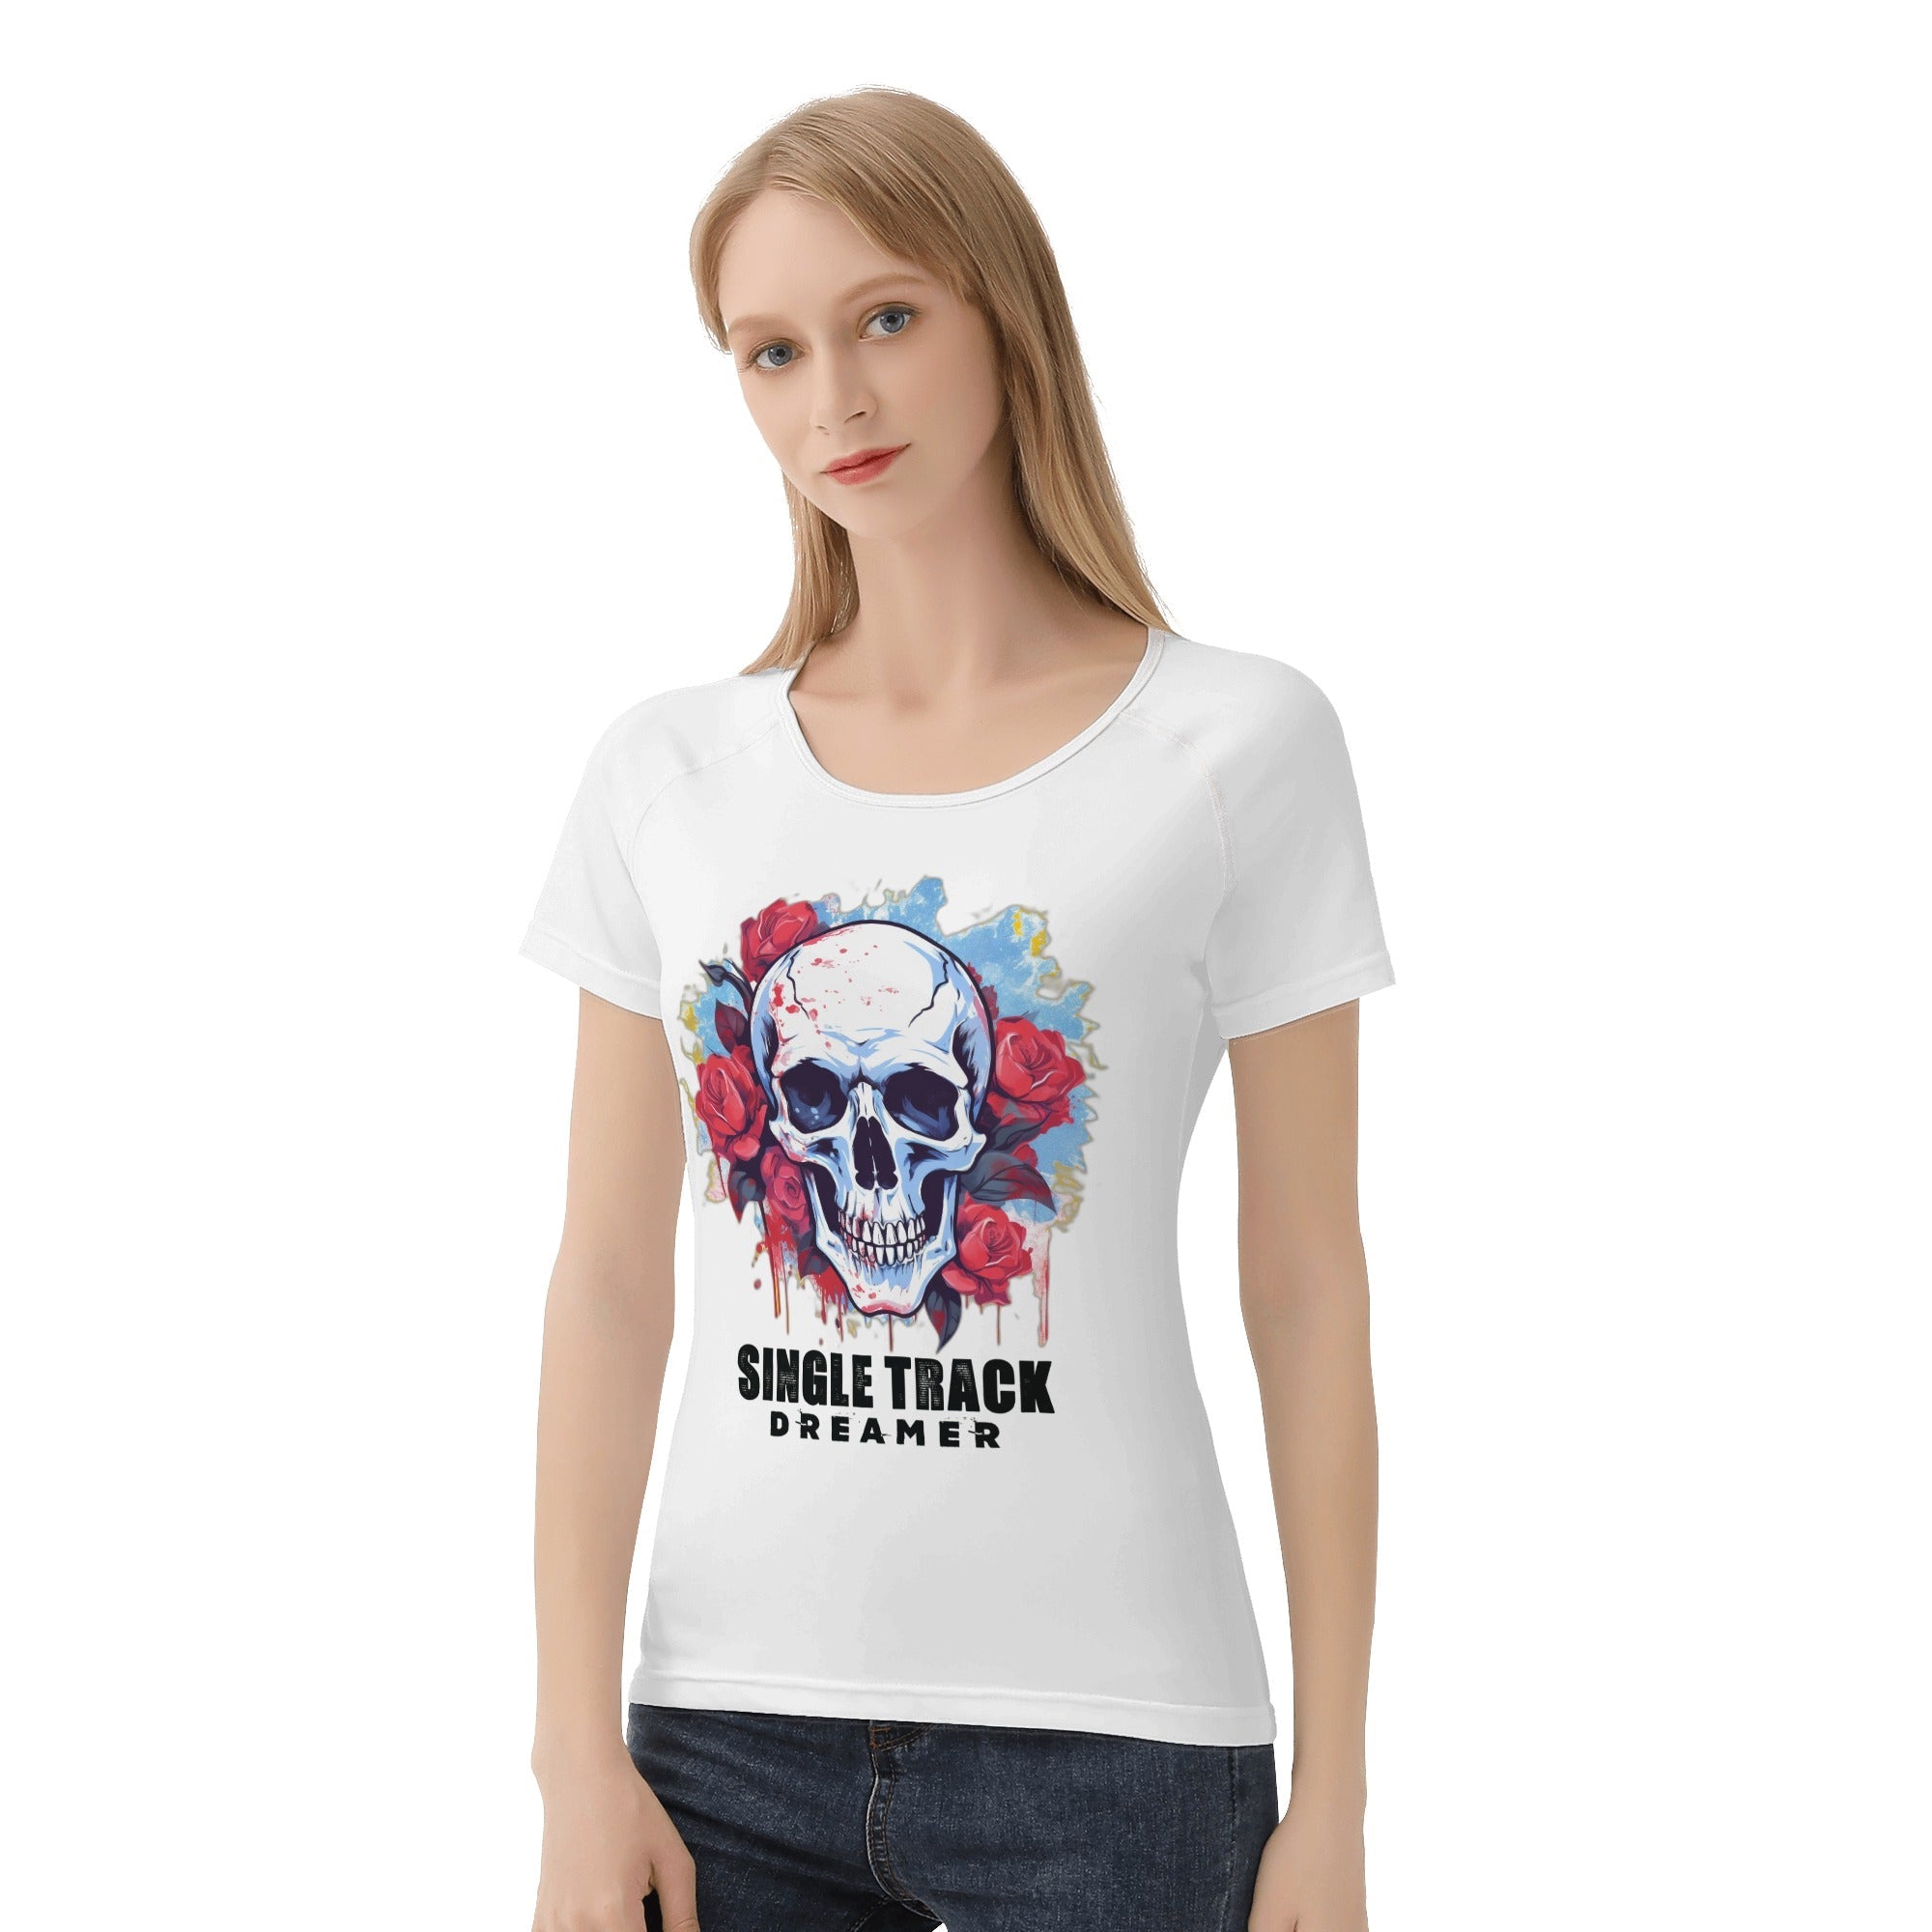 Women's All-Over Print T shirt - Single Track Dreamer